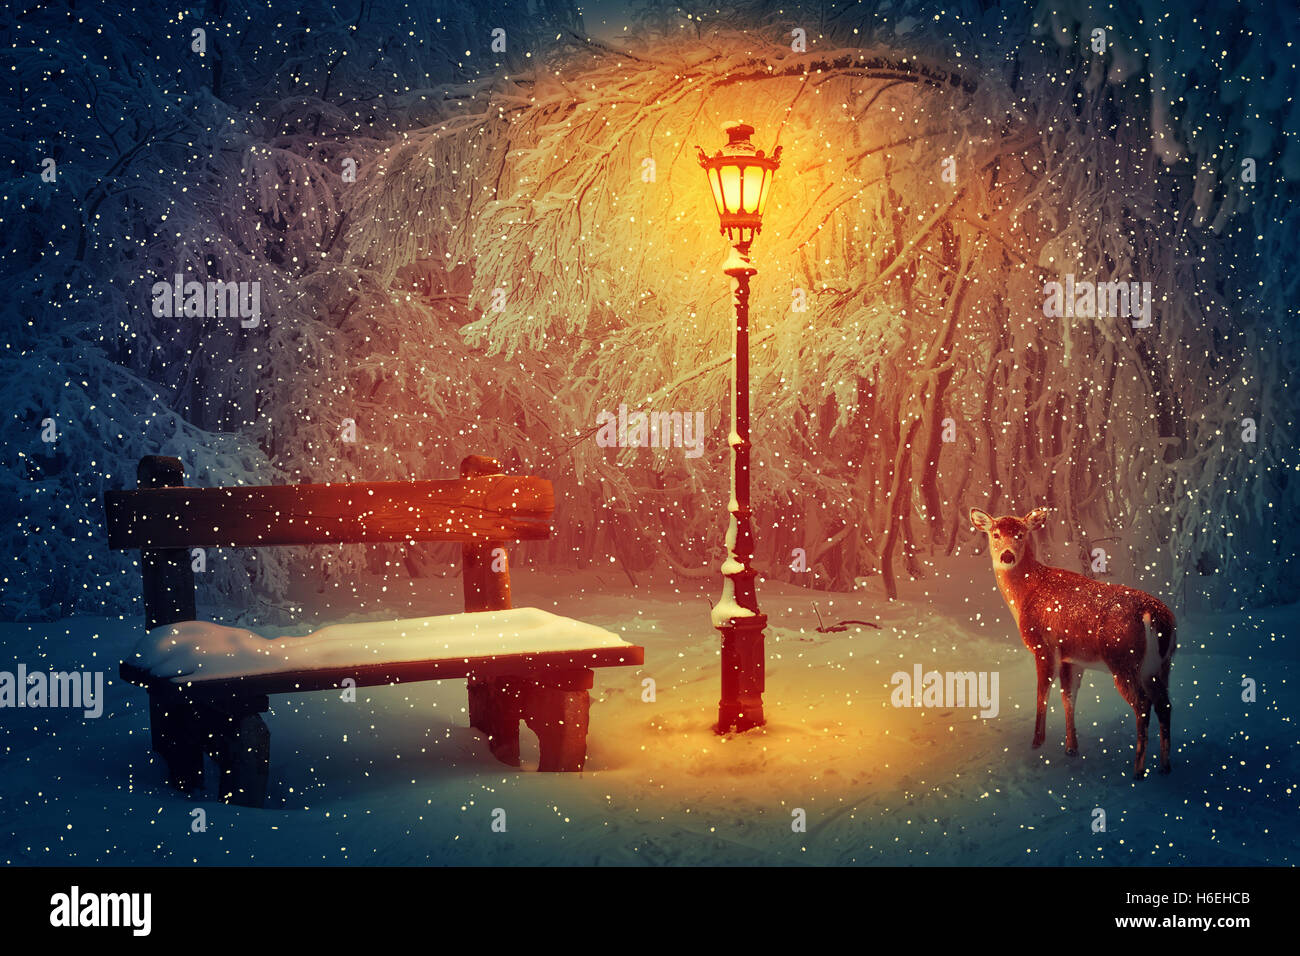 Panca in legno e una lampada incandescente nel parco invernale coperto di neve. Nevicava notte tranquilla e la scena di un DOE cercando carefull Foto Stock